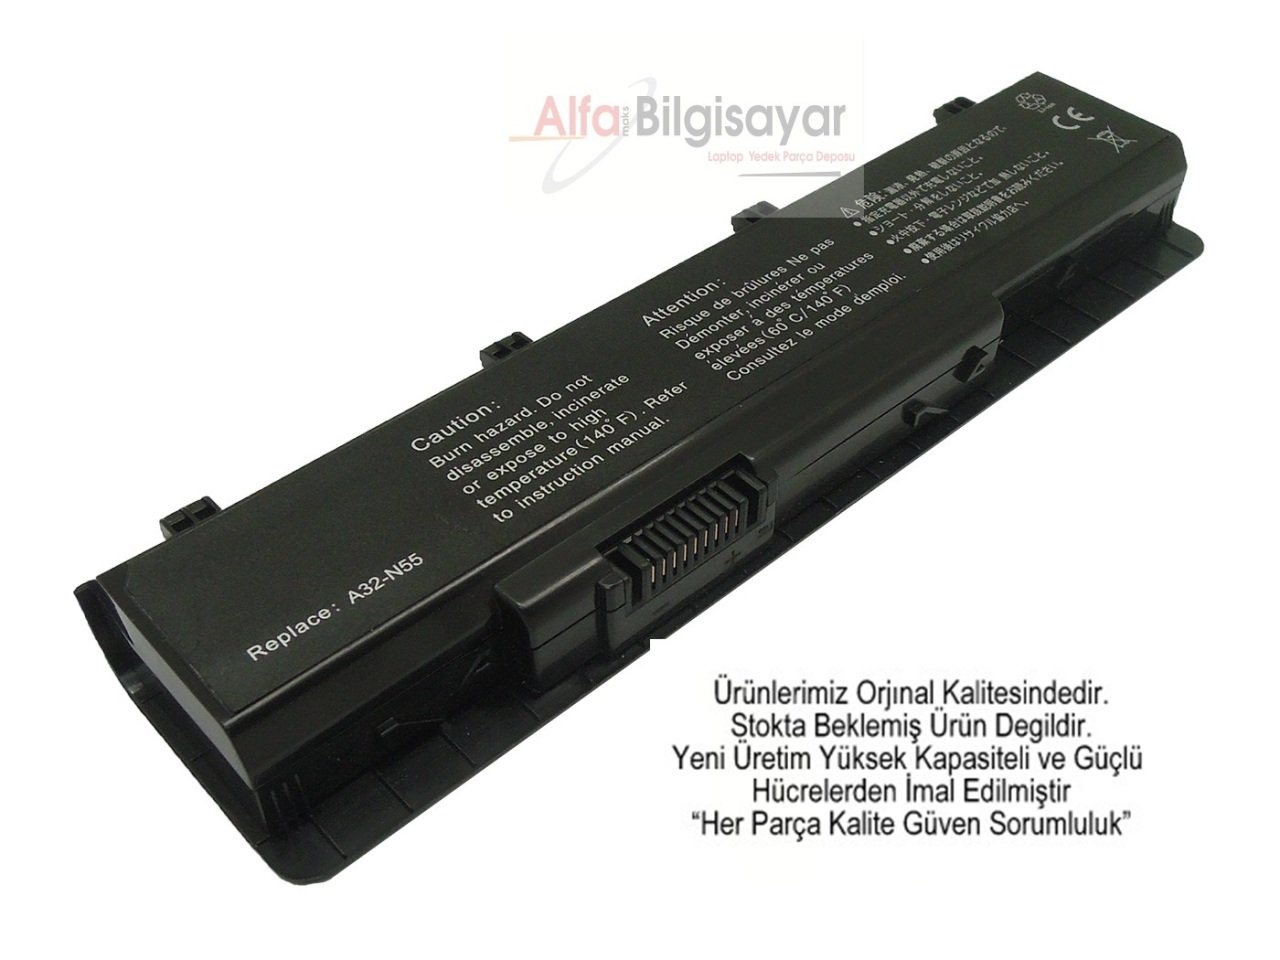 Asus N45 N45E N45S N45J N45JC N45SJ N45SF N45SL N45SV N45VM N55 N55SF N55SL N55E N55S N75 N75E N75s N75jv N75sf N75sl N75SN N75SV A31-N55  A32-N55  A31-N55 Batarya Pil Battery